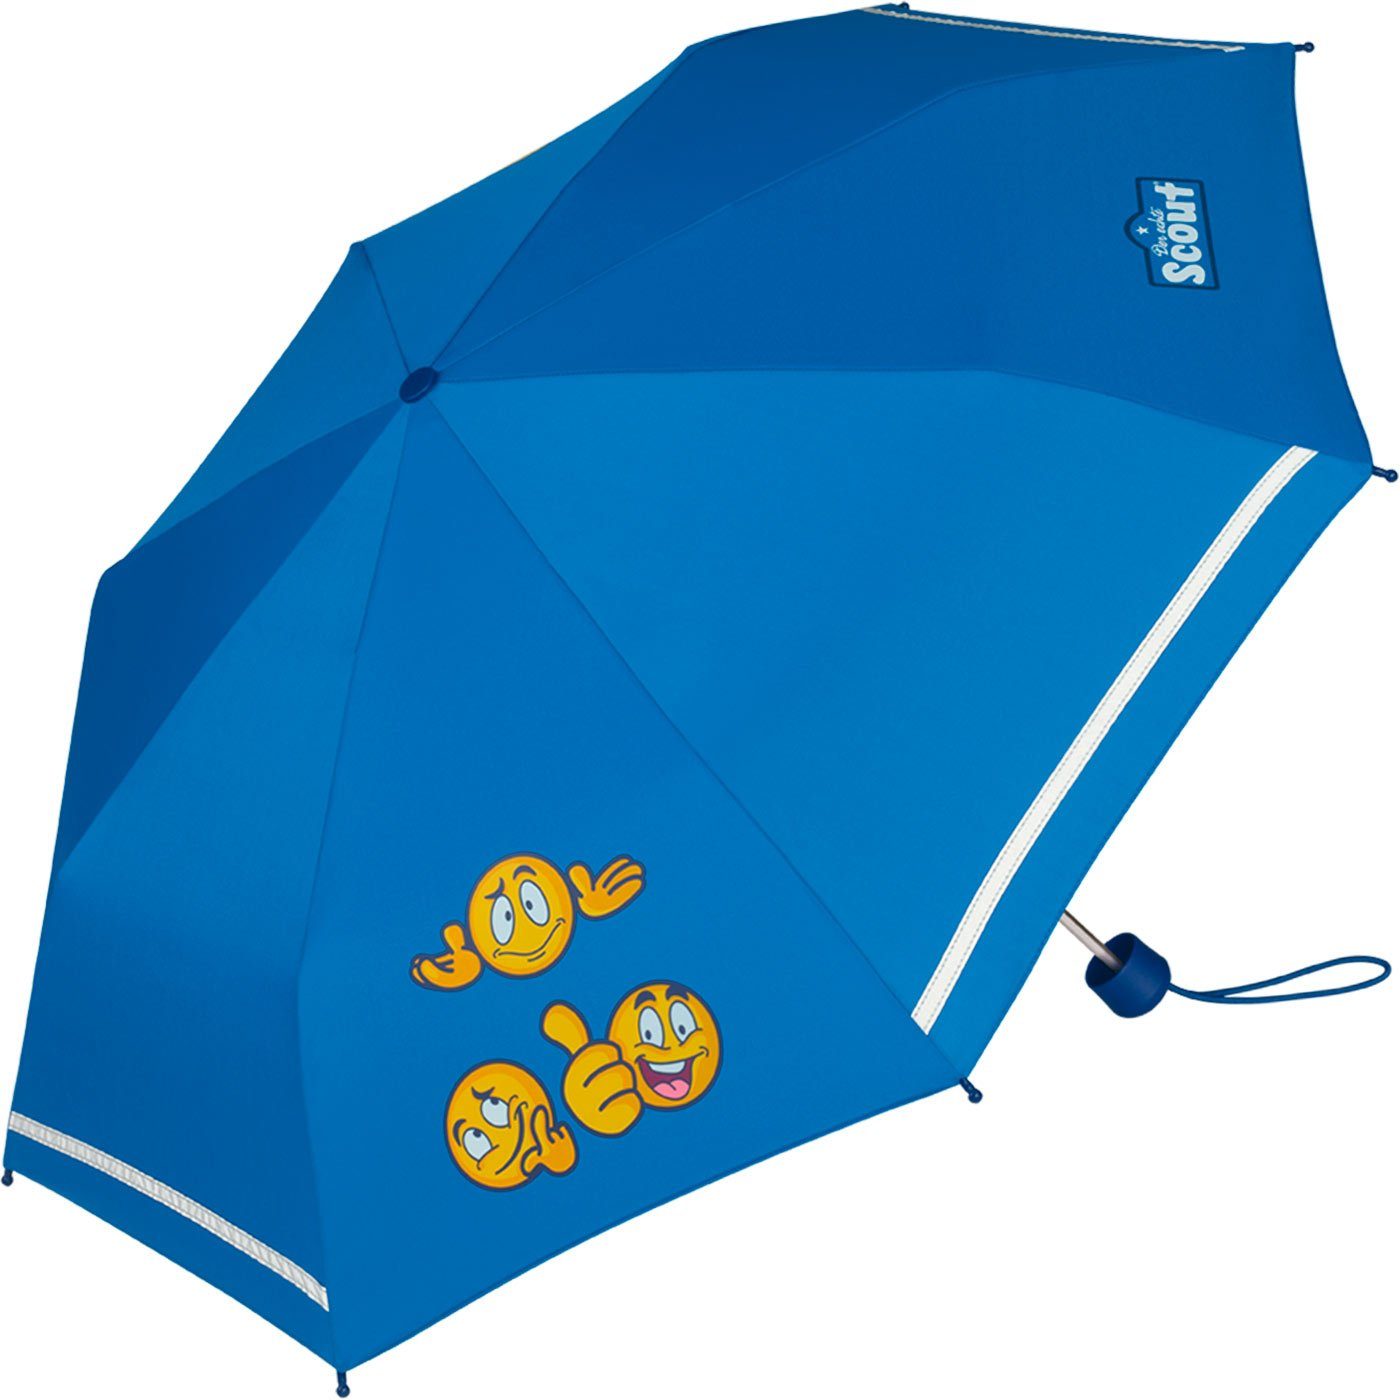 Scout Taschenregenschirm reflektierend für Mini Kinder leicht bedruckt, Kinderschirm extra Emoji-blau gemacht